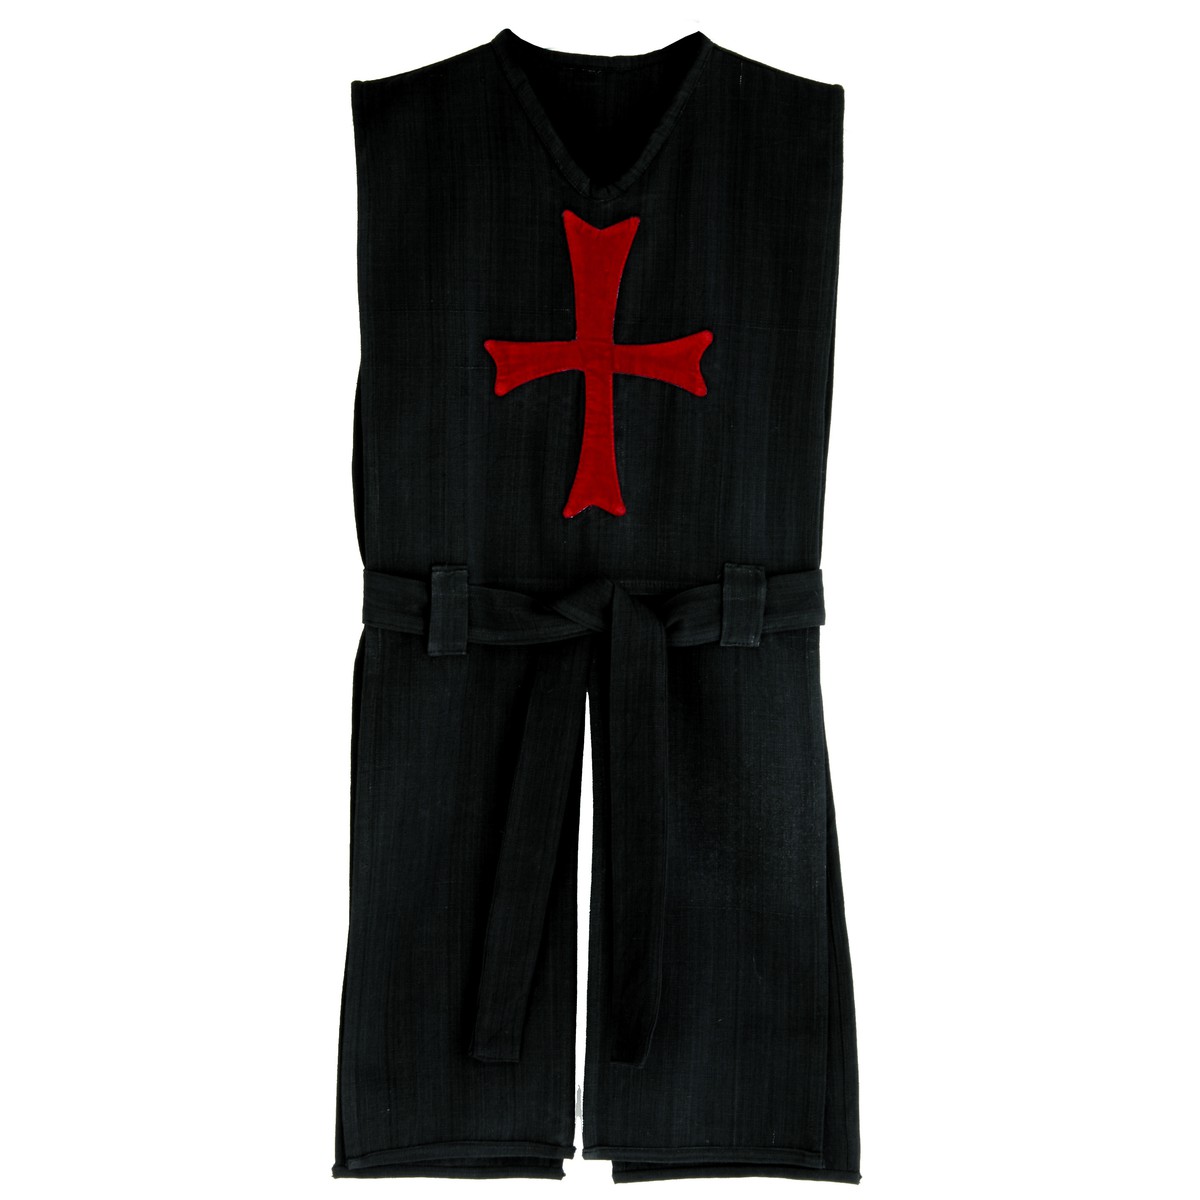   Tunique Templier, noire avec croix rouge Noir 80x35x2cm